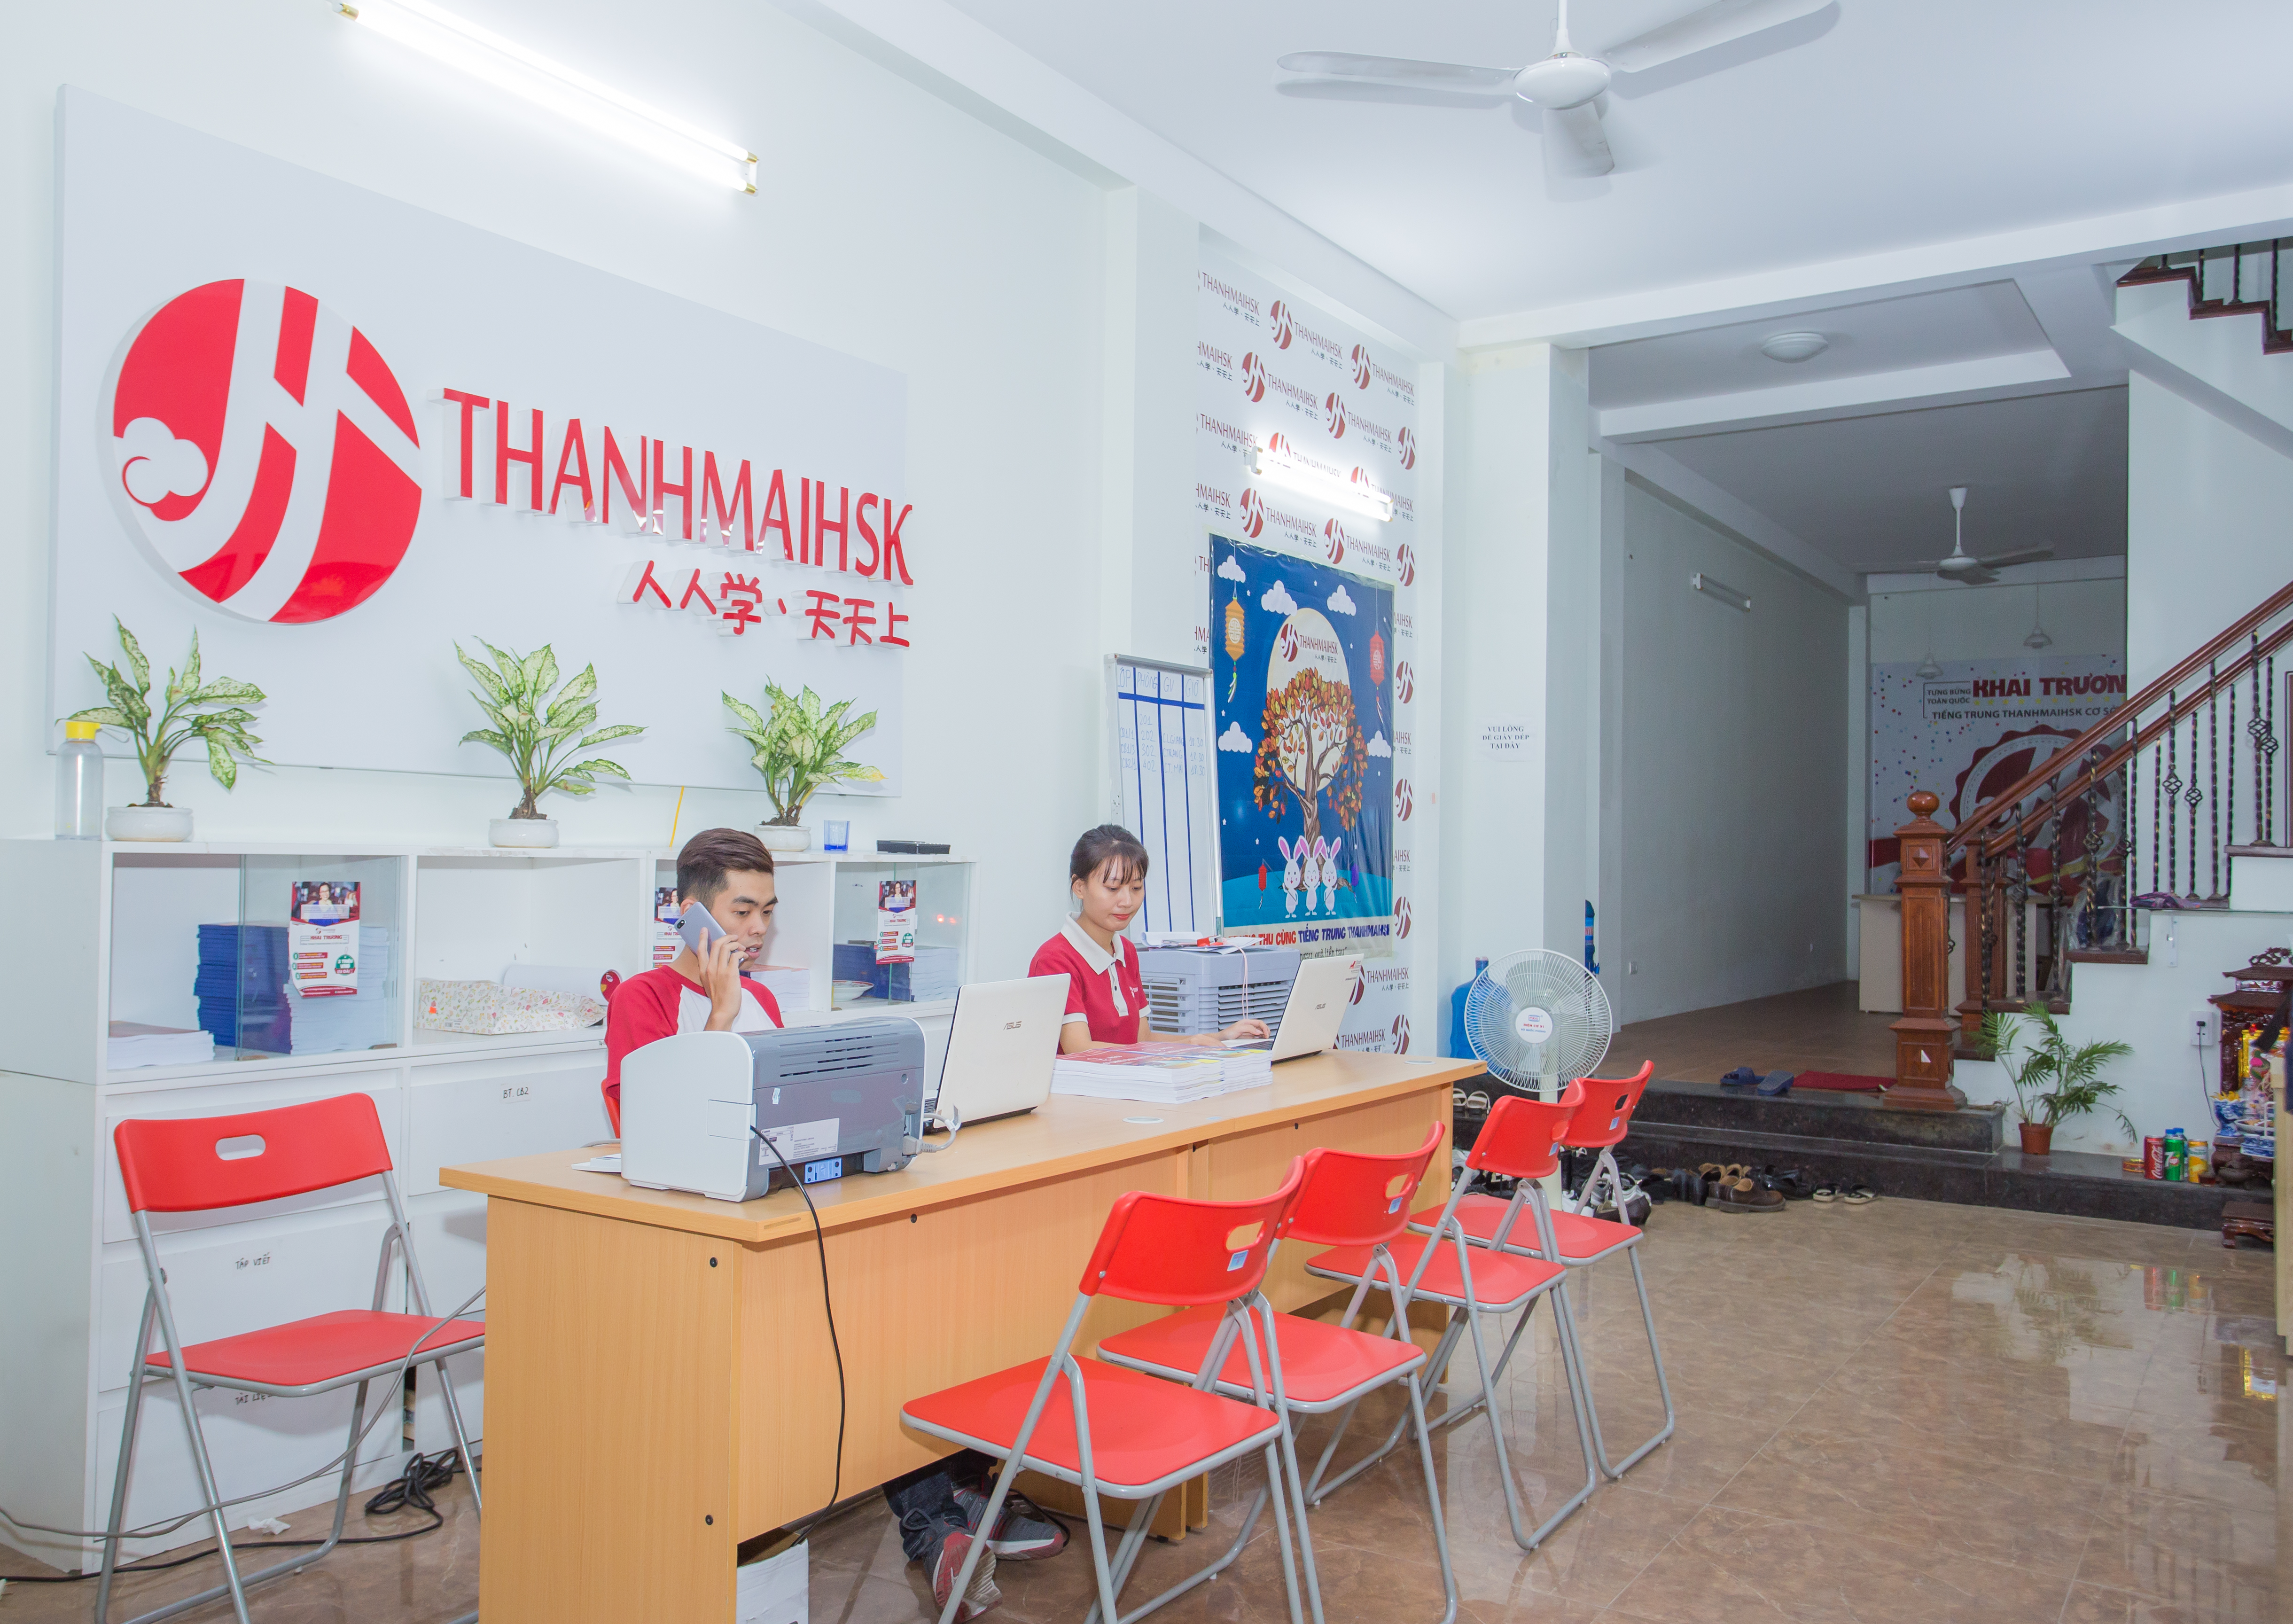 Hình ảnh Ôn thi đại học môn tiếng Trung điểm cao tại THANHMAIHSK 2